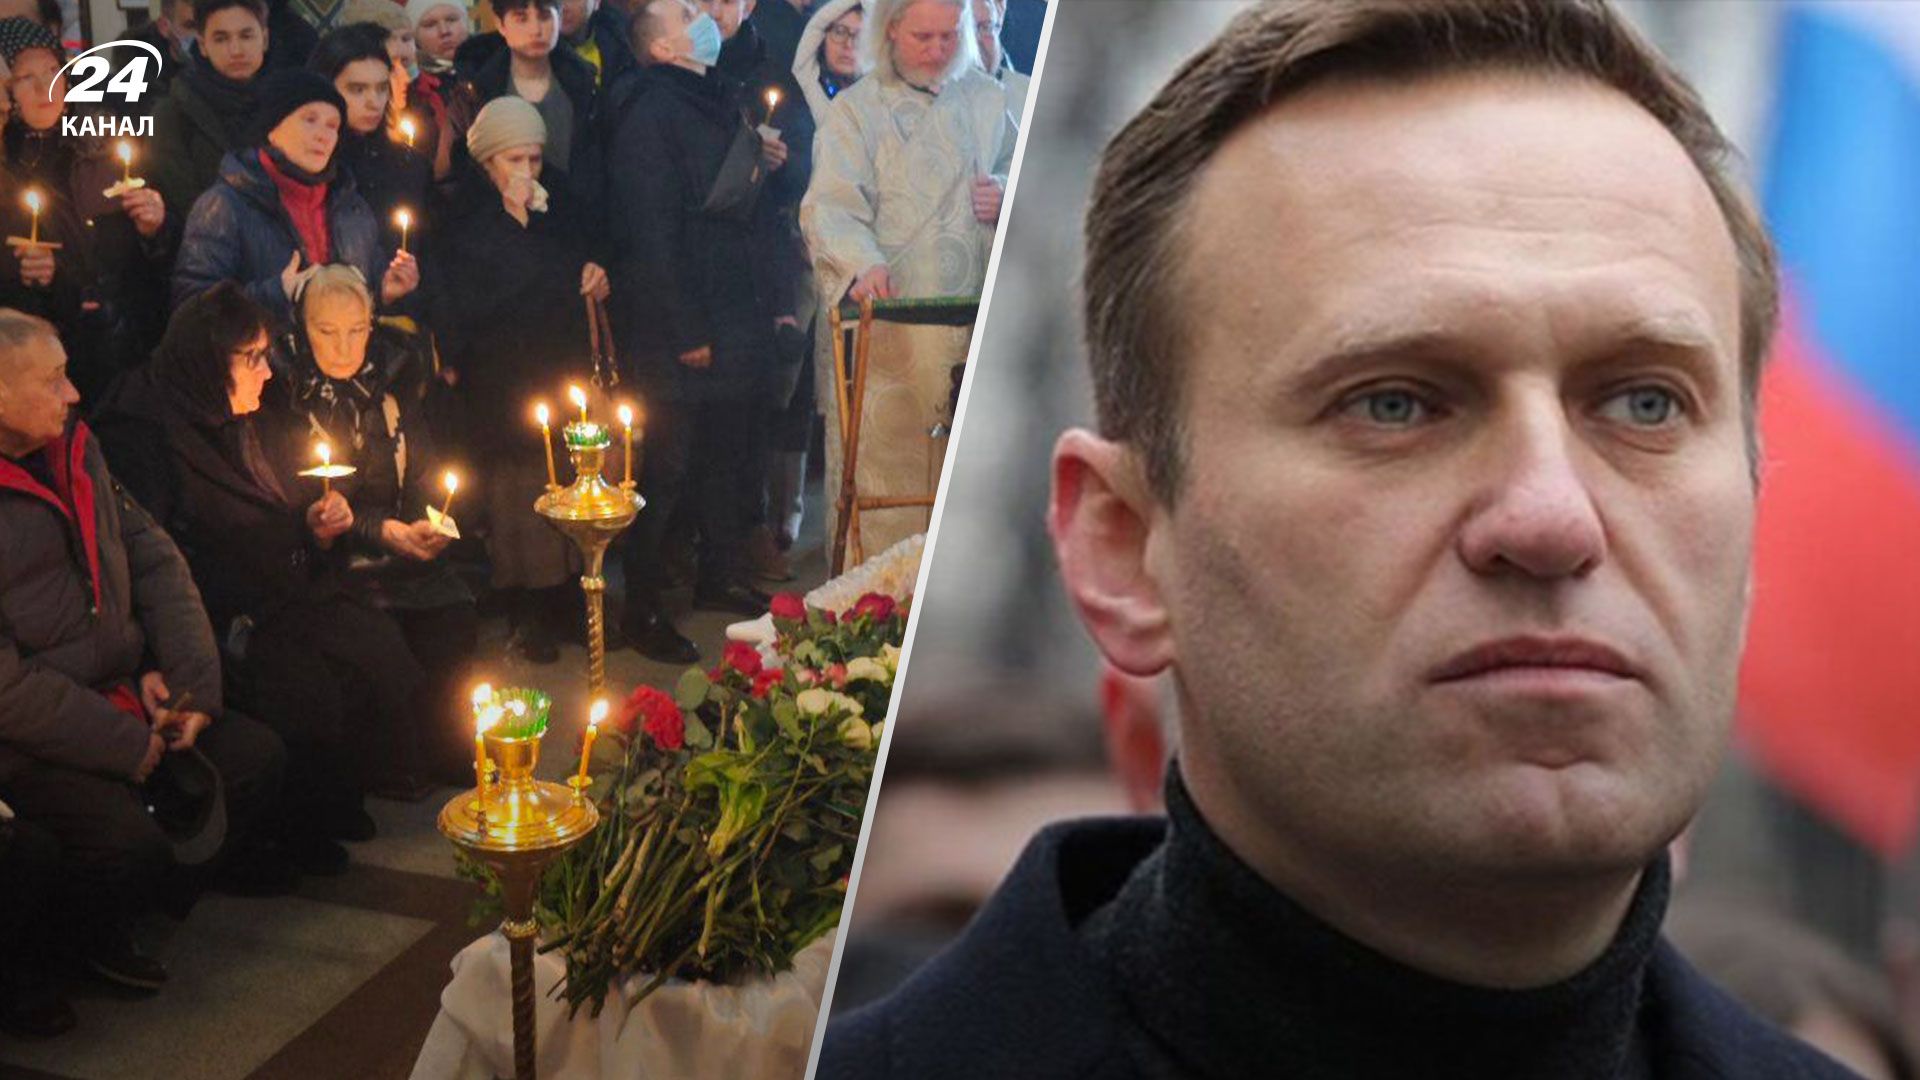 Впервые после смерти показали тело Навального - 24 Канал